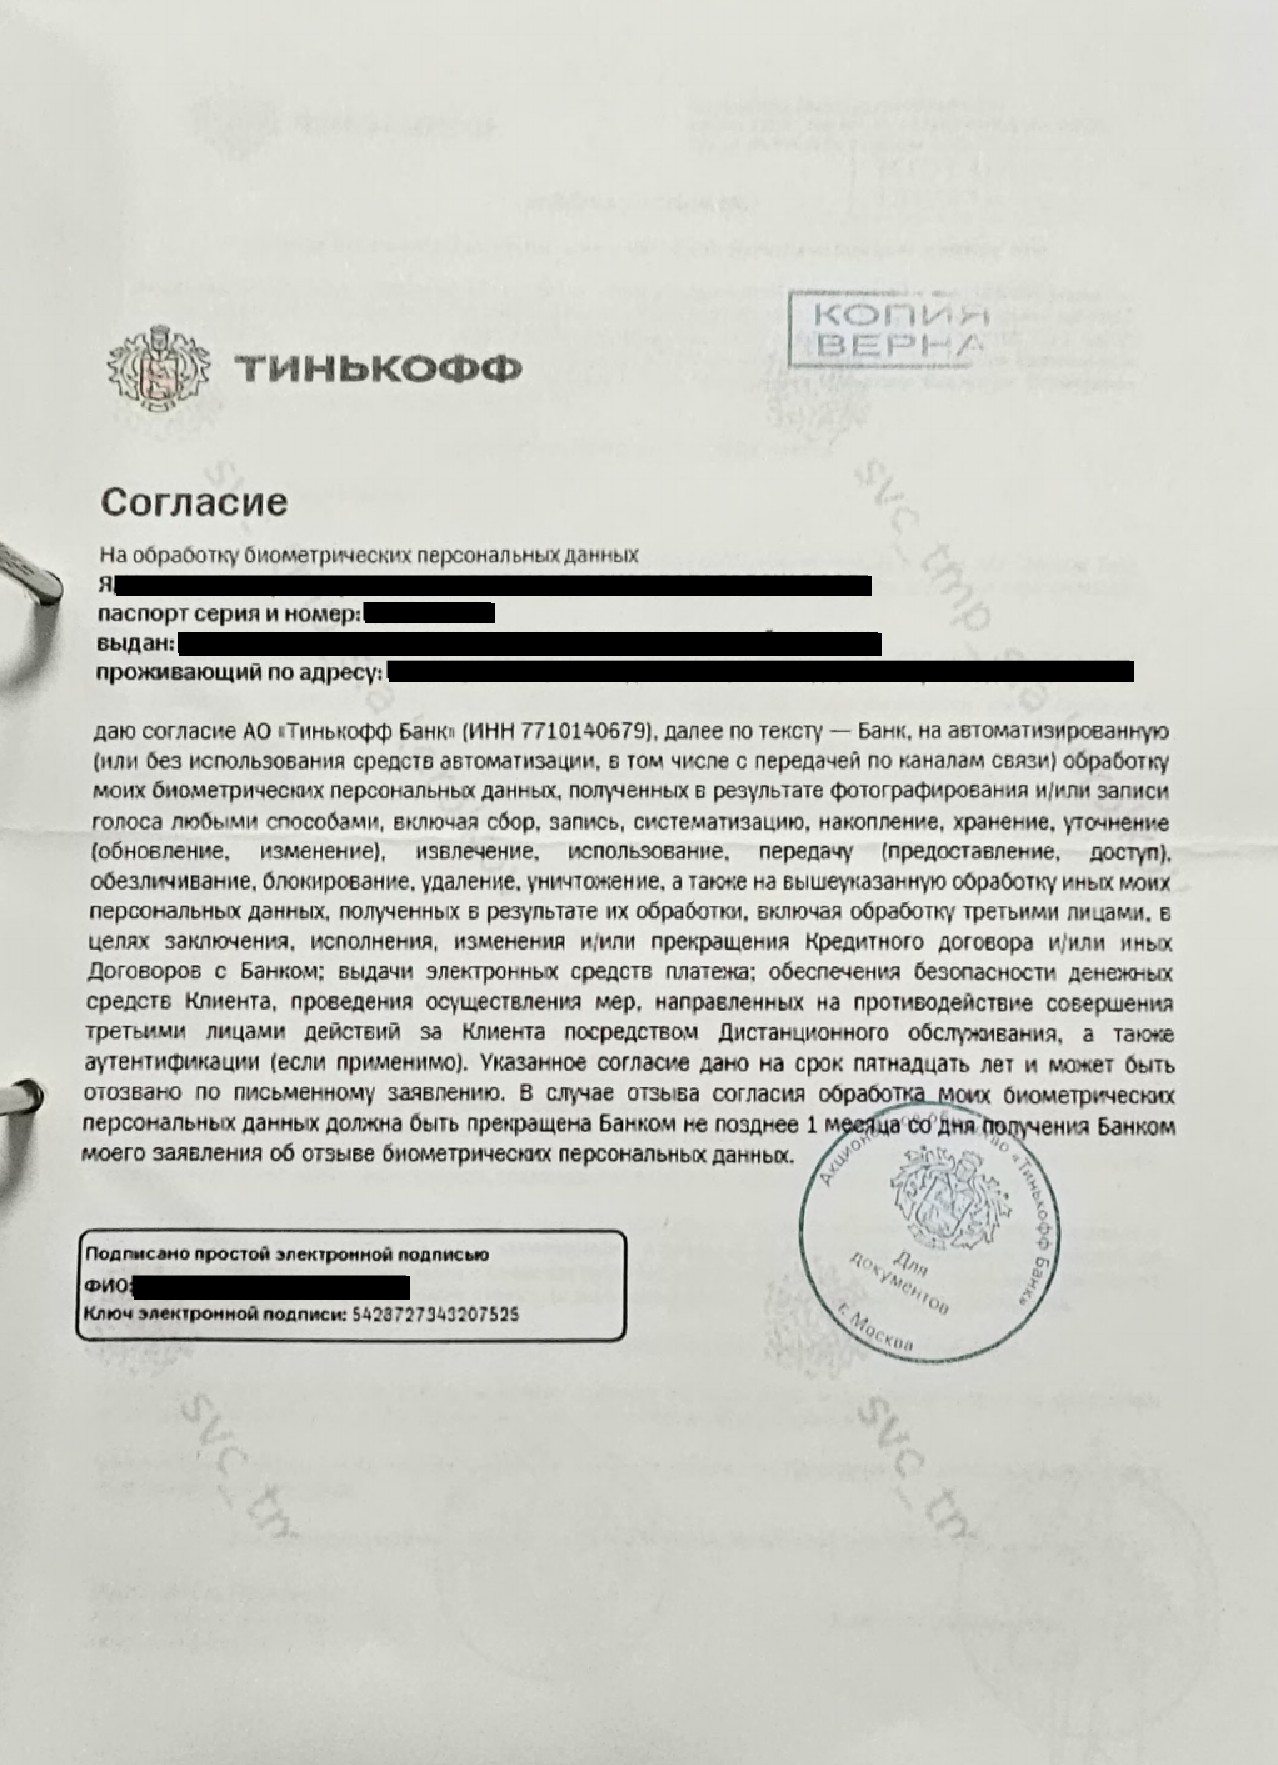 Тинькофф дает противоречащие ответы Роскомнадзору и ЦБ РФ в части дачи клиентом согласия на обработку его биометрии - 5